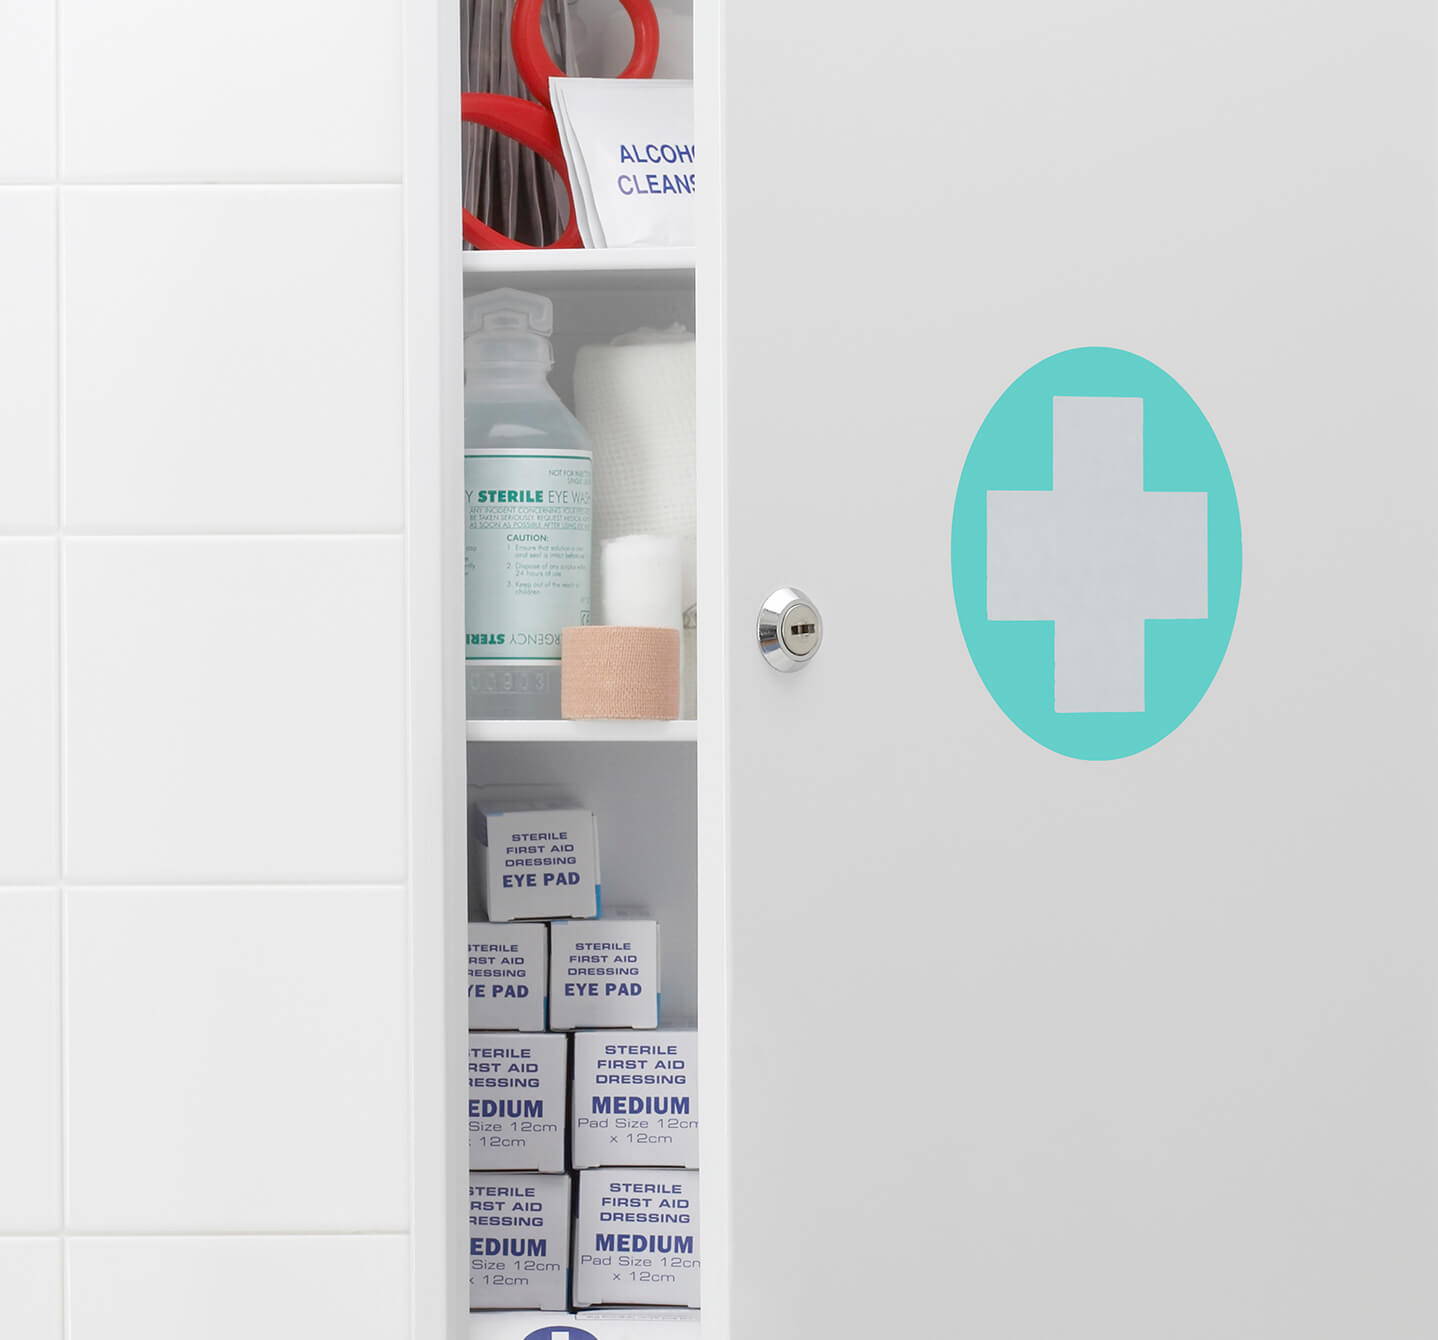 Badezimmerschrank mit weißem Kreuz auf einem mintgrünen Kreis auf halb offener Tür, in dem dein Allergiemedikament stehen könnte.